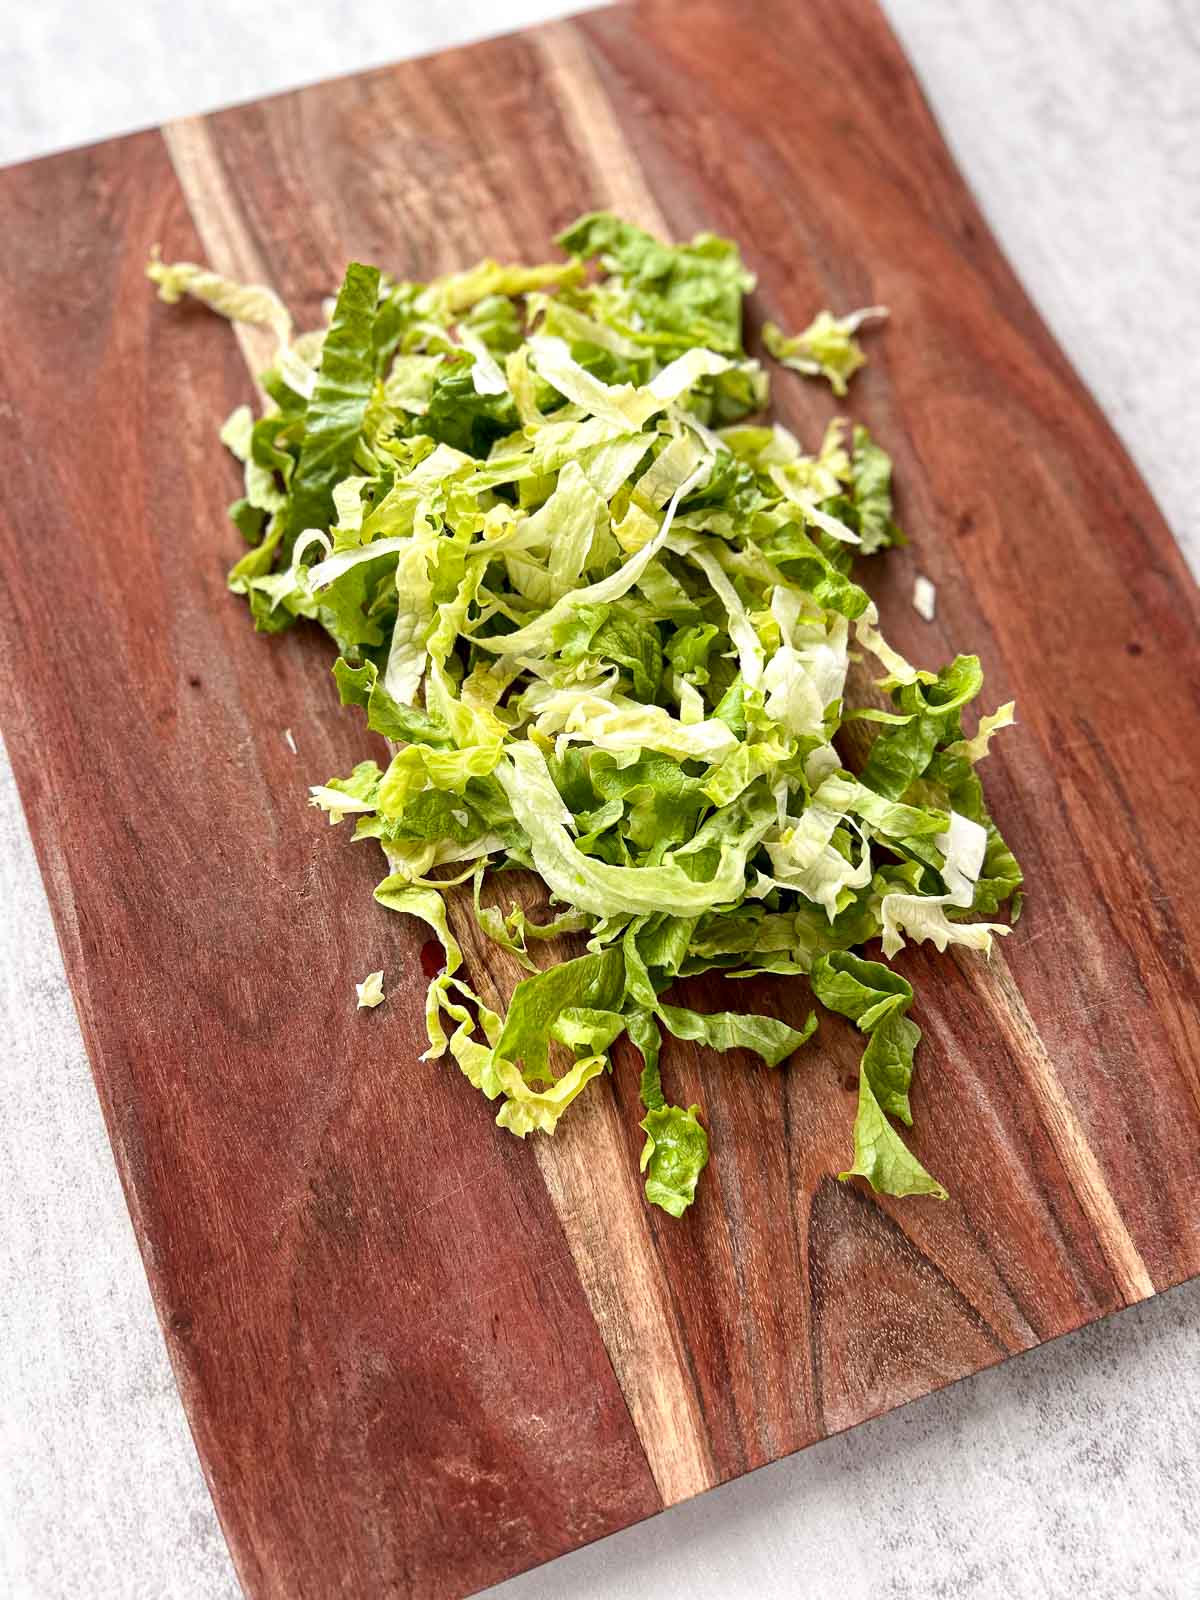 Shredded lettuce on a wood cutting board.